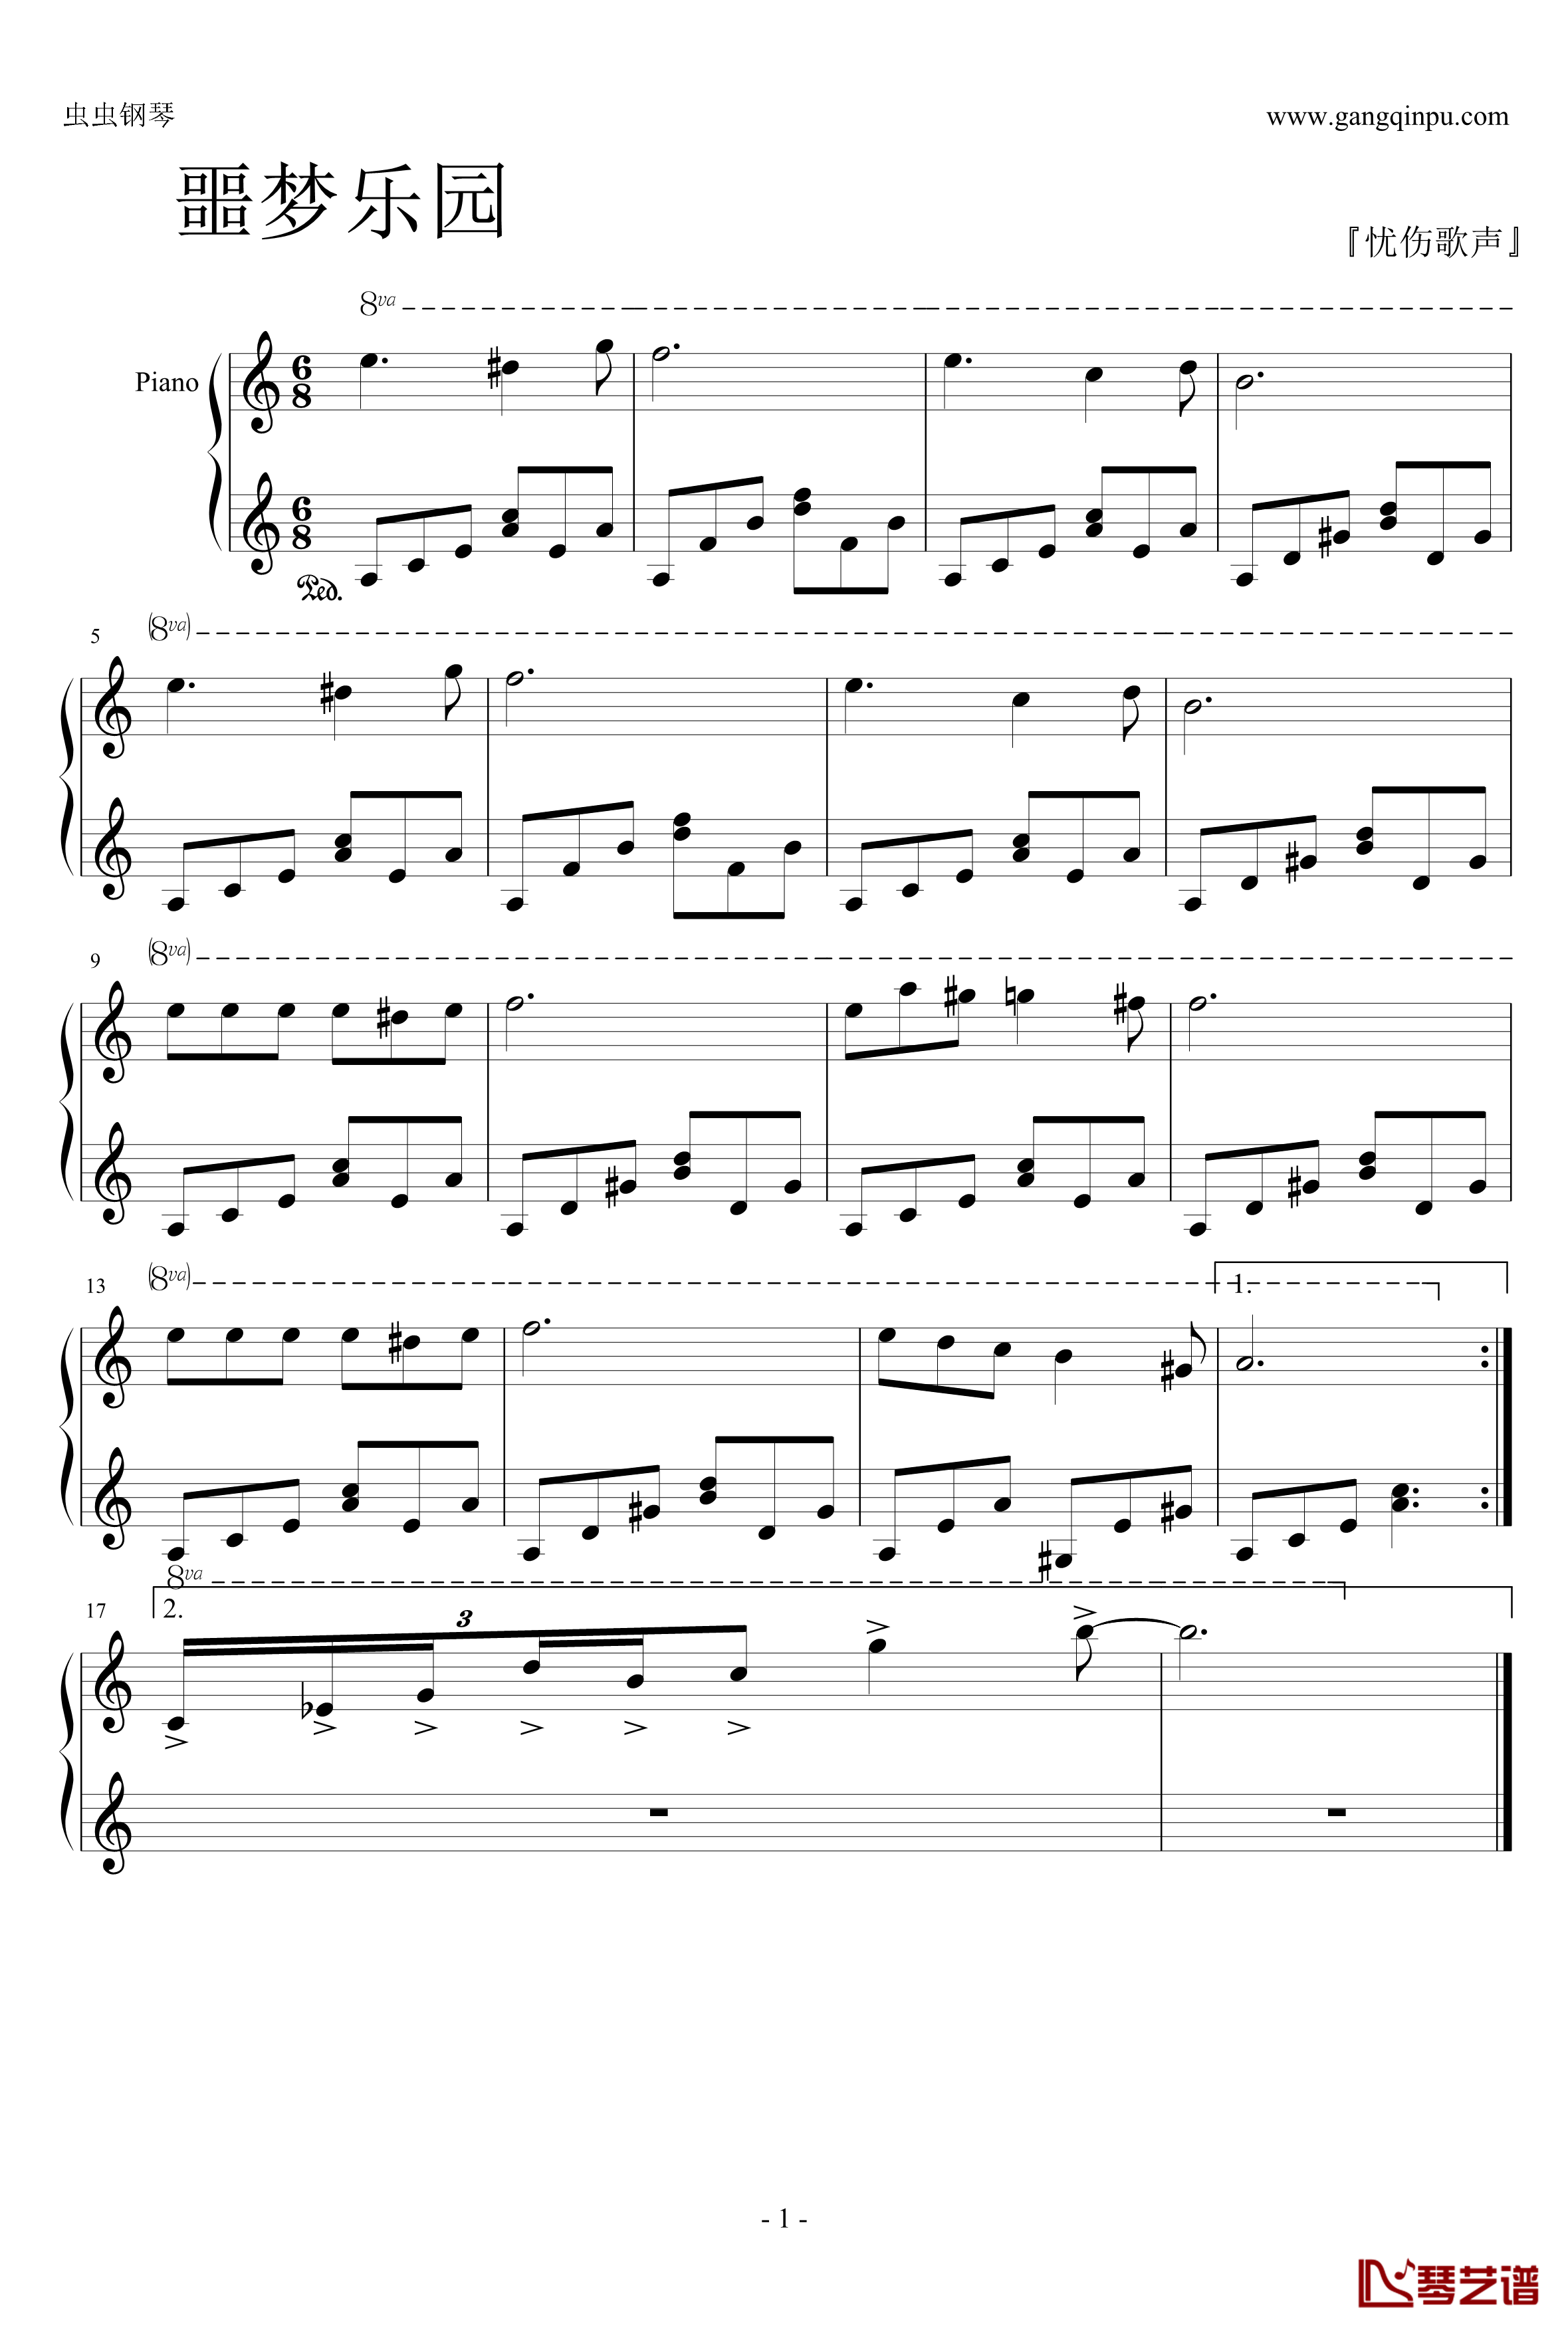 噩梦乐园之抉择钢琴谱-噩梦乐园1